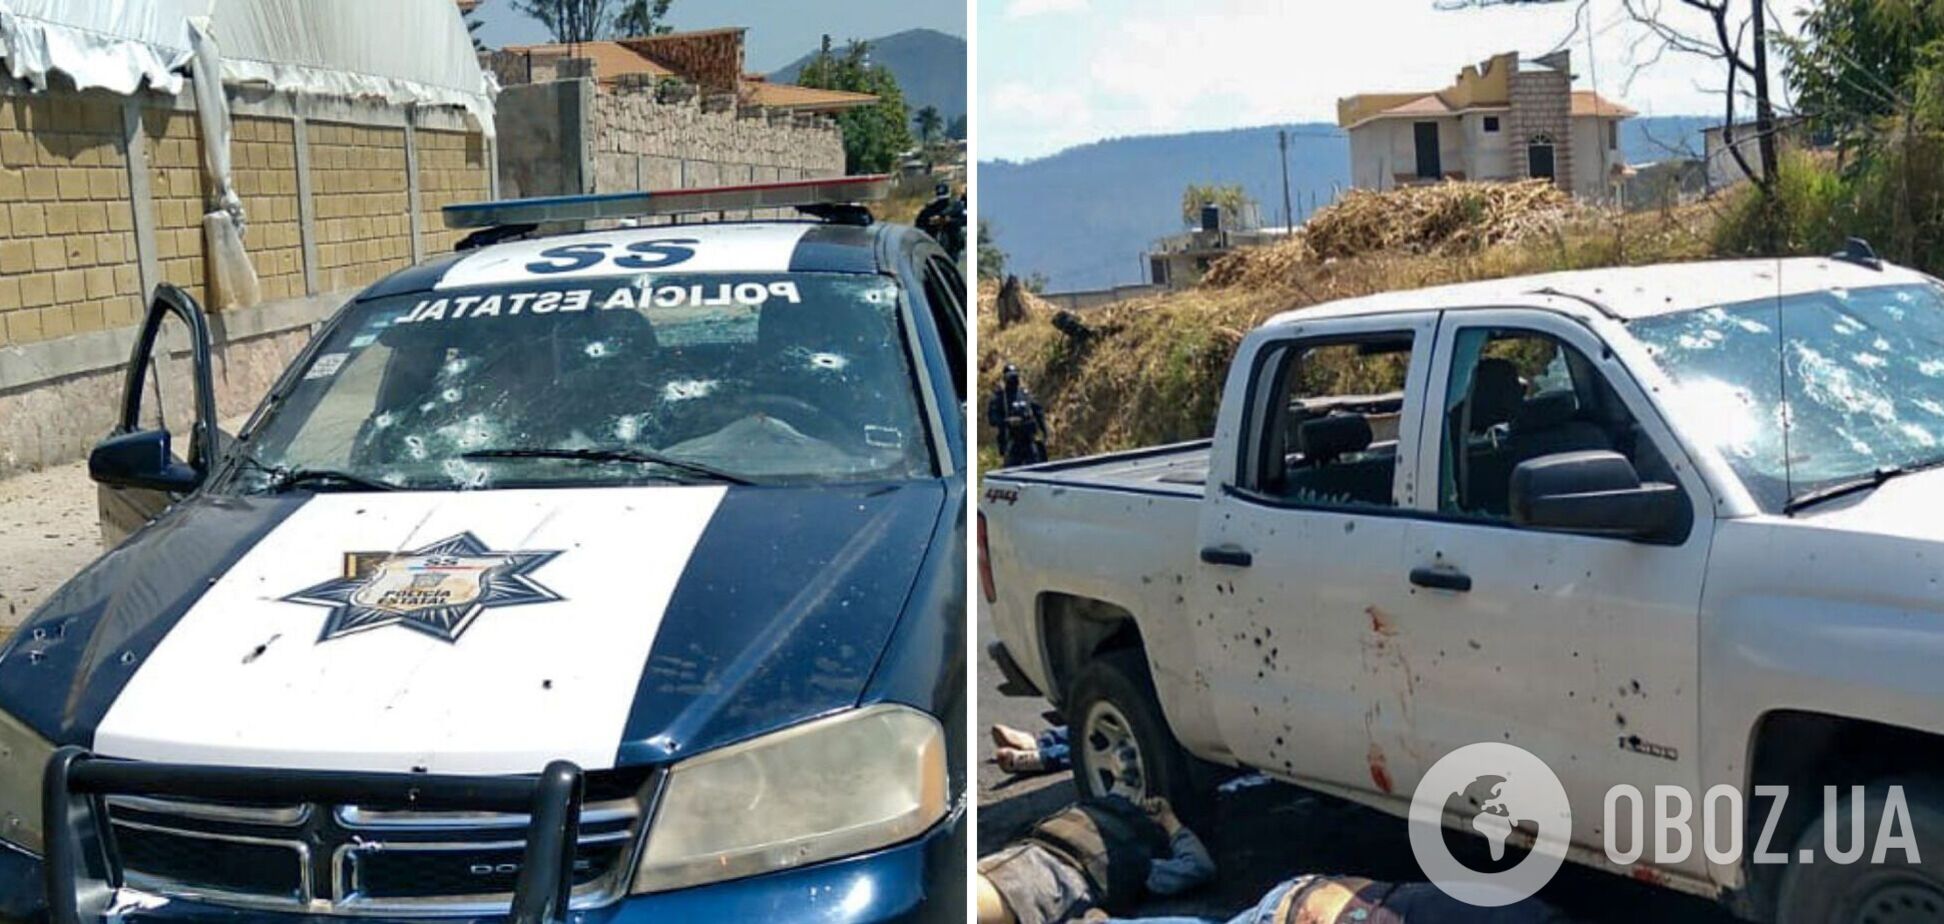 Убили 13 полицейских в Мексике